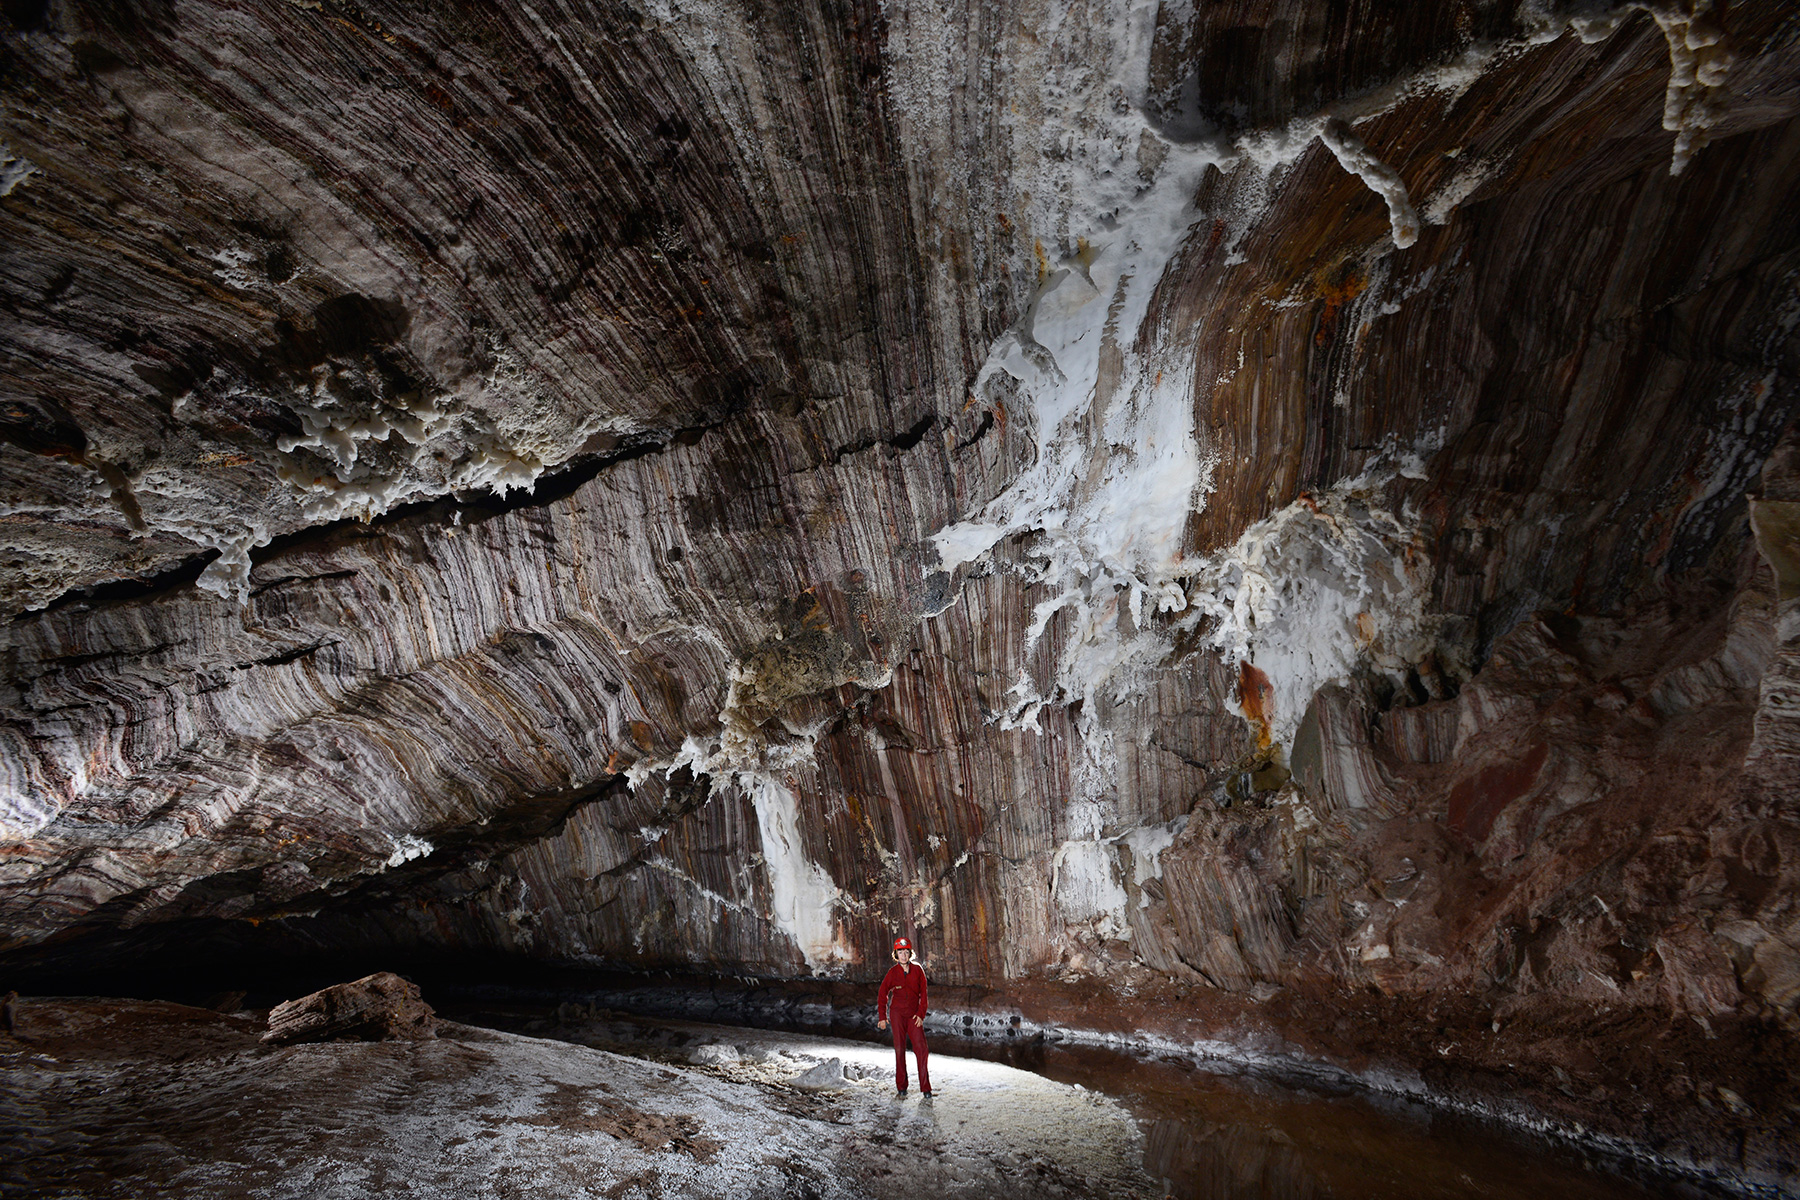 The World's Largest Salt Cave